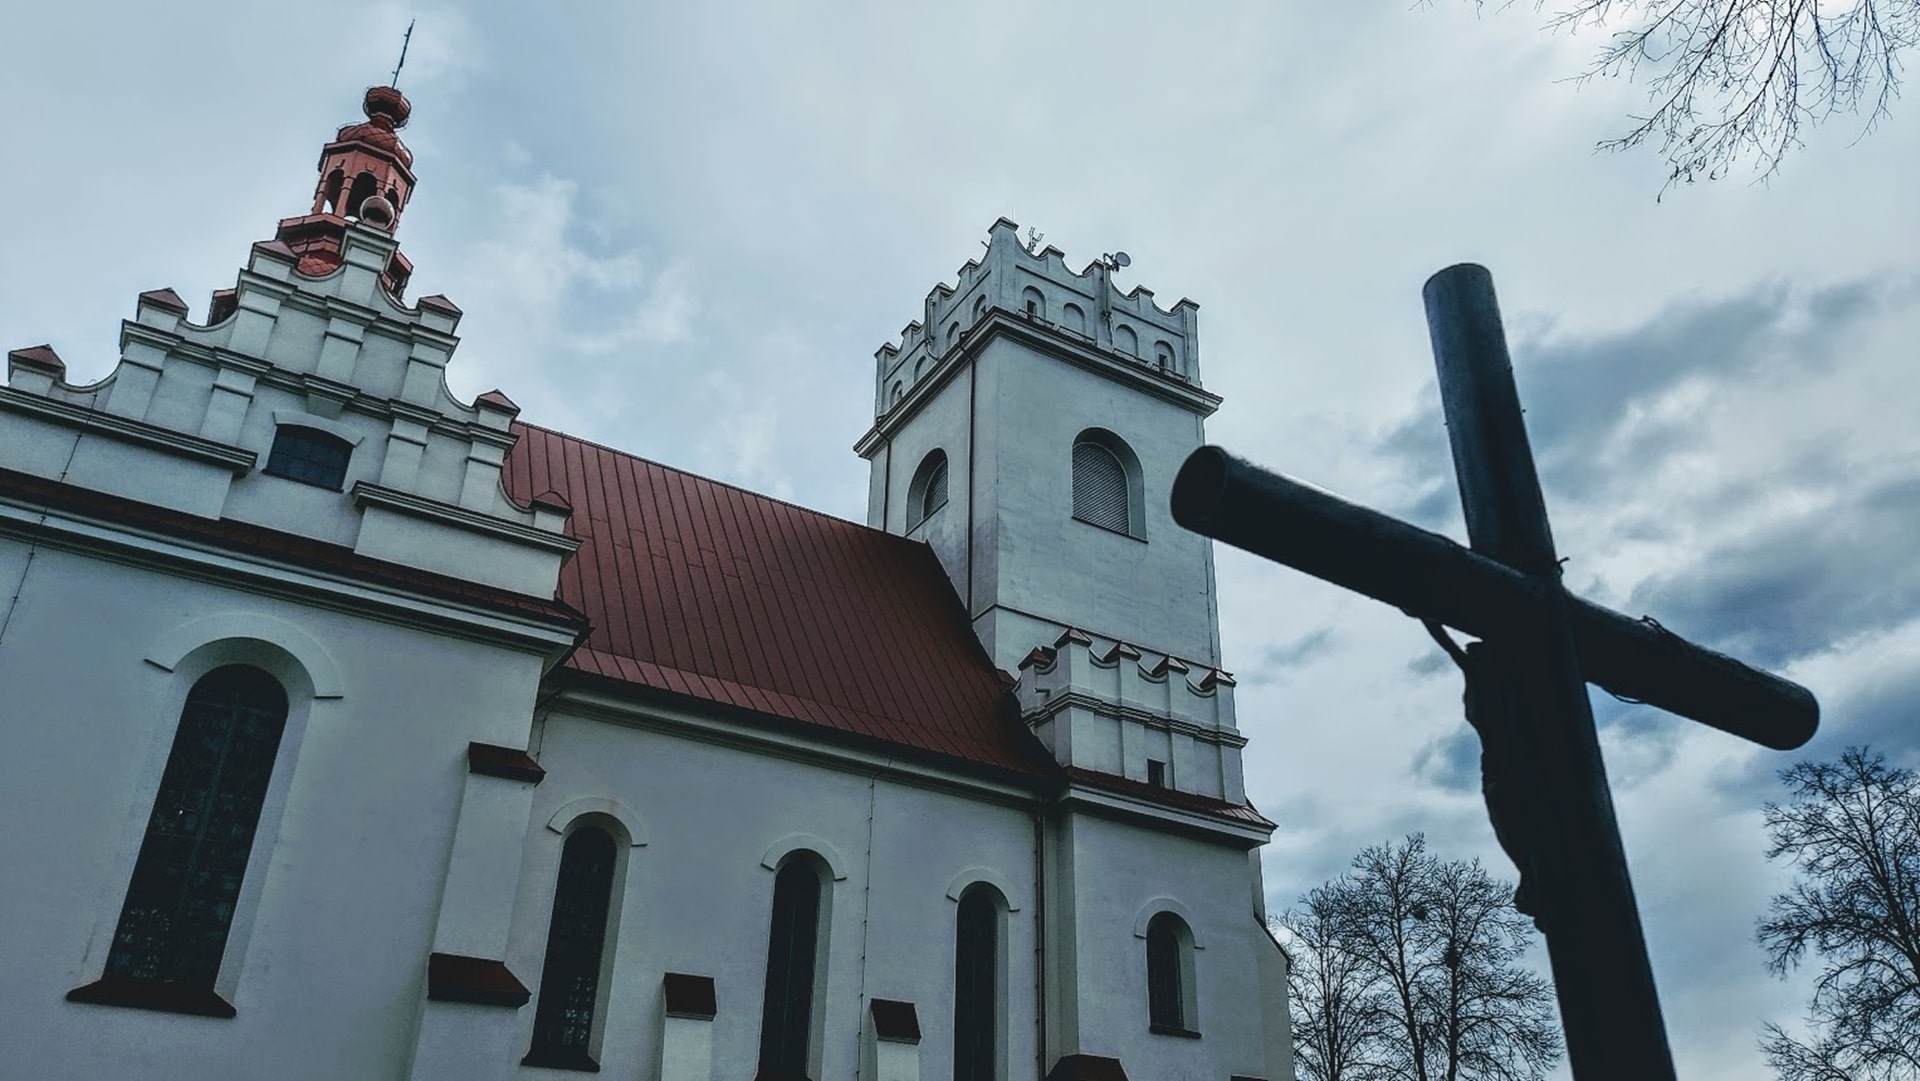 Kościół pw. Świętej Teresy od Dzieciątka Jezus w Białowieży, fot. Miłka Malzahn